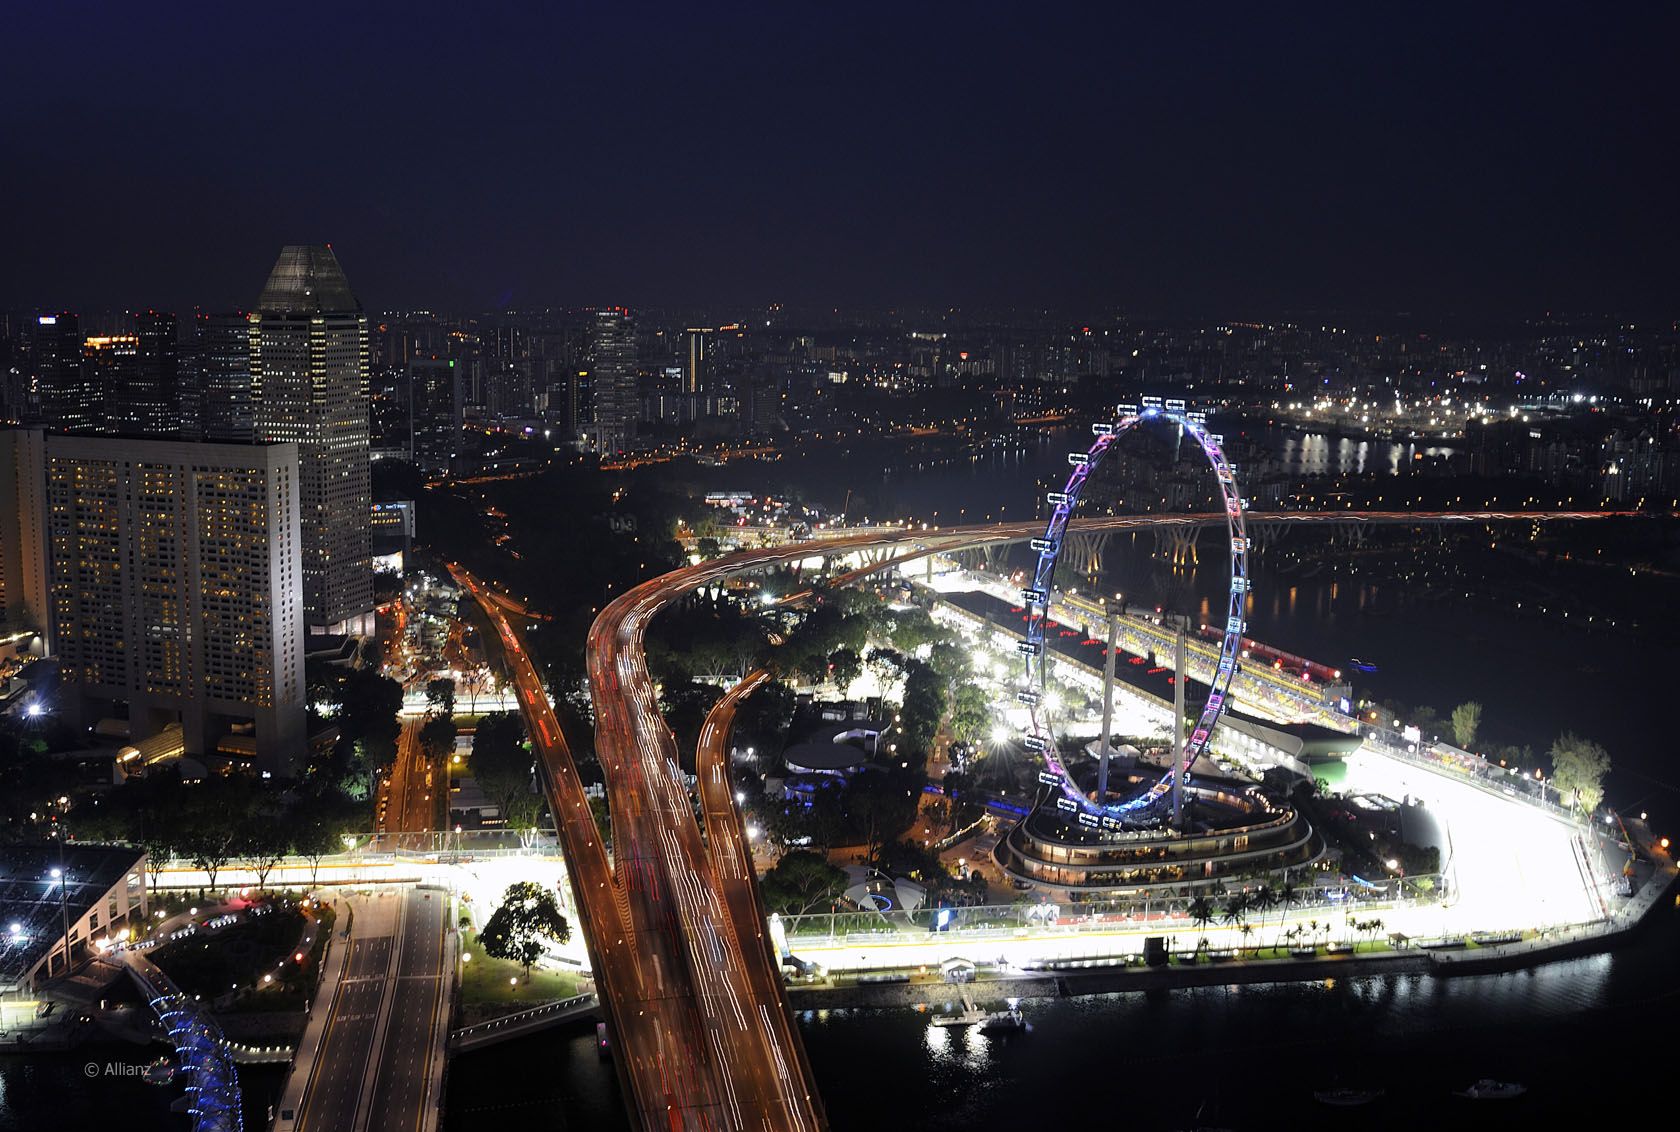 Il tratto finale del circuito di Singapore, con la ruota panoramica che sovrasta il paddock (foto da: hdmotori.it)